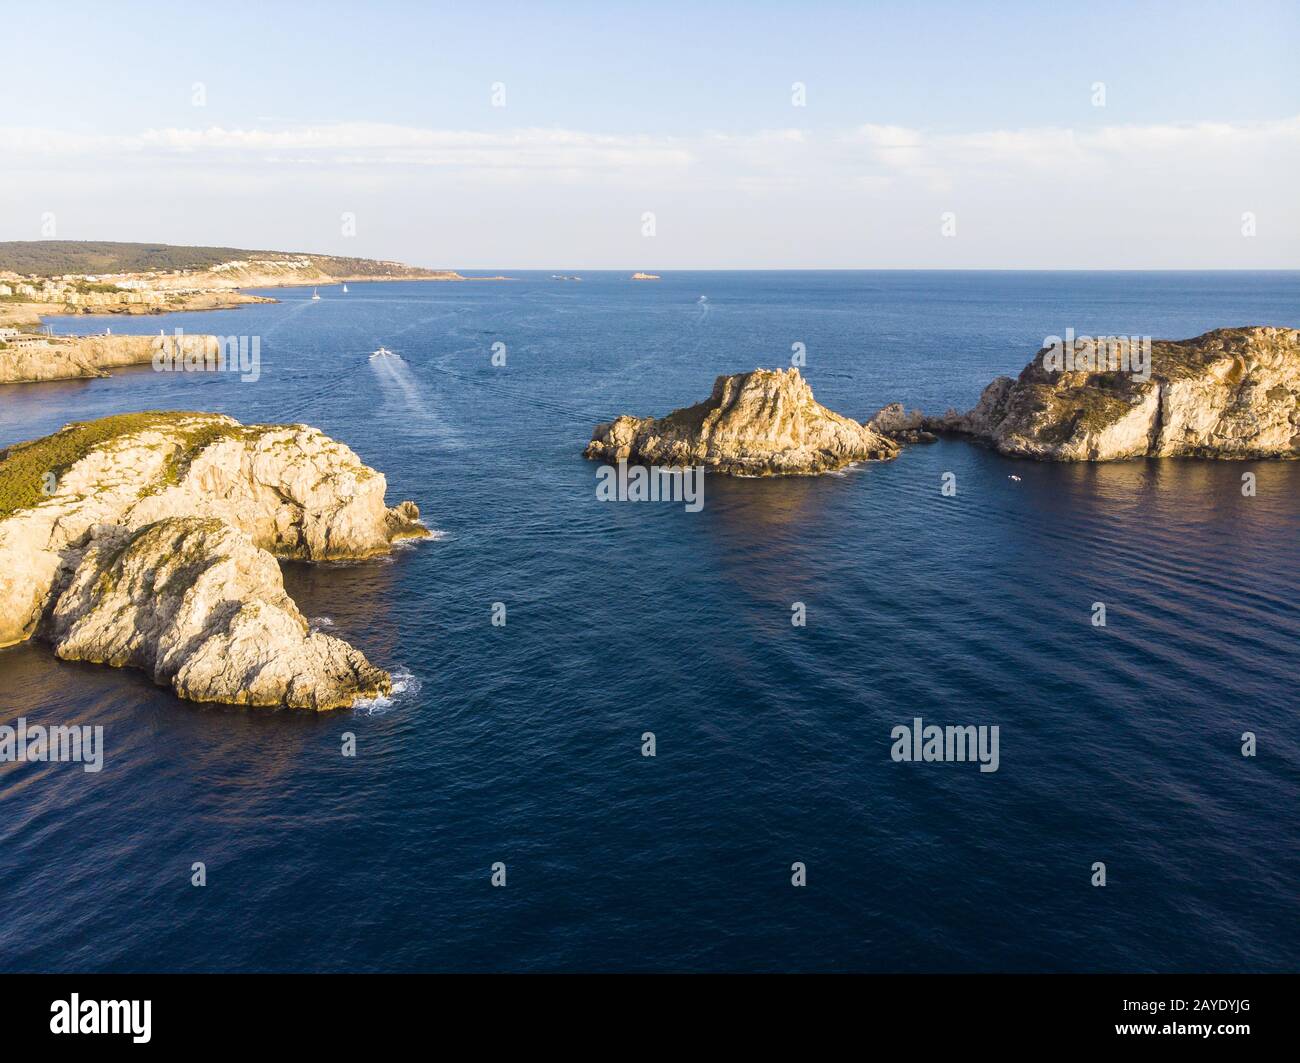 Vista aérea sobre las islas Malgrats y Santa Ponca Foto de stock